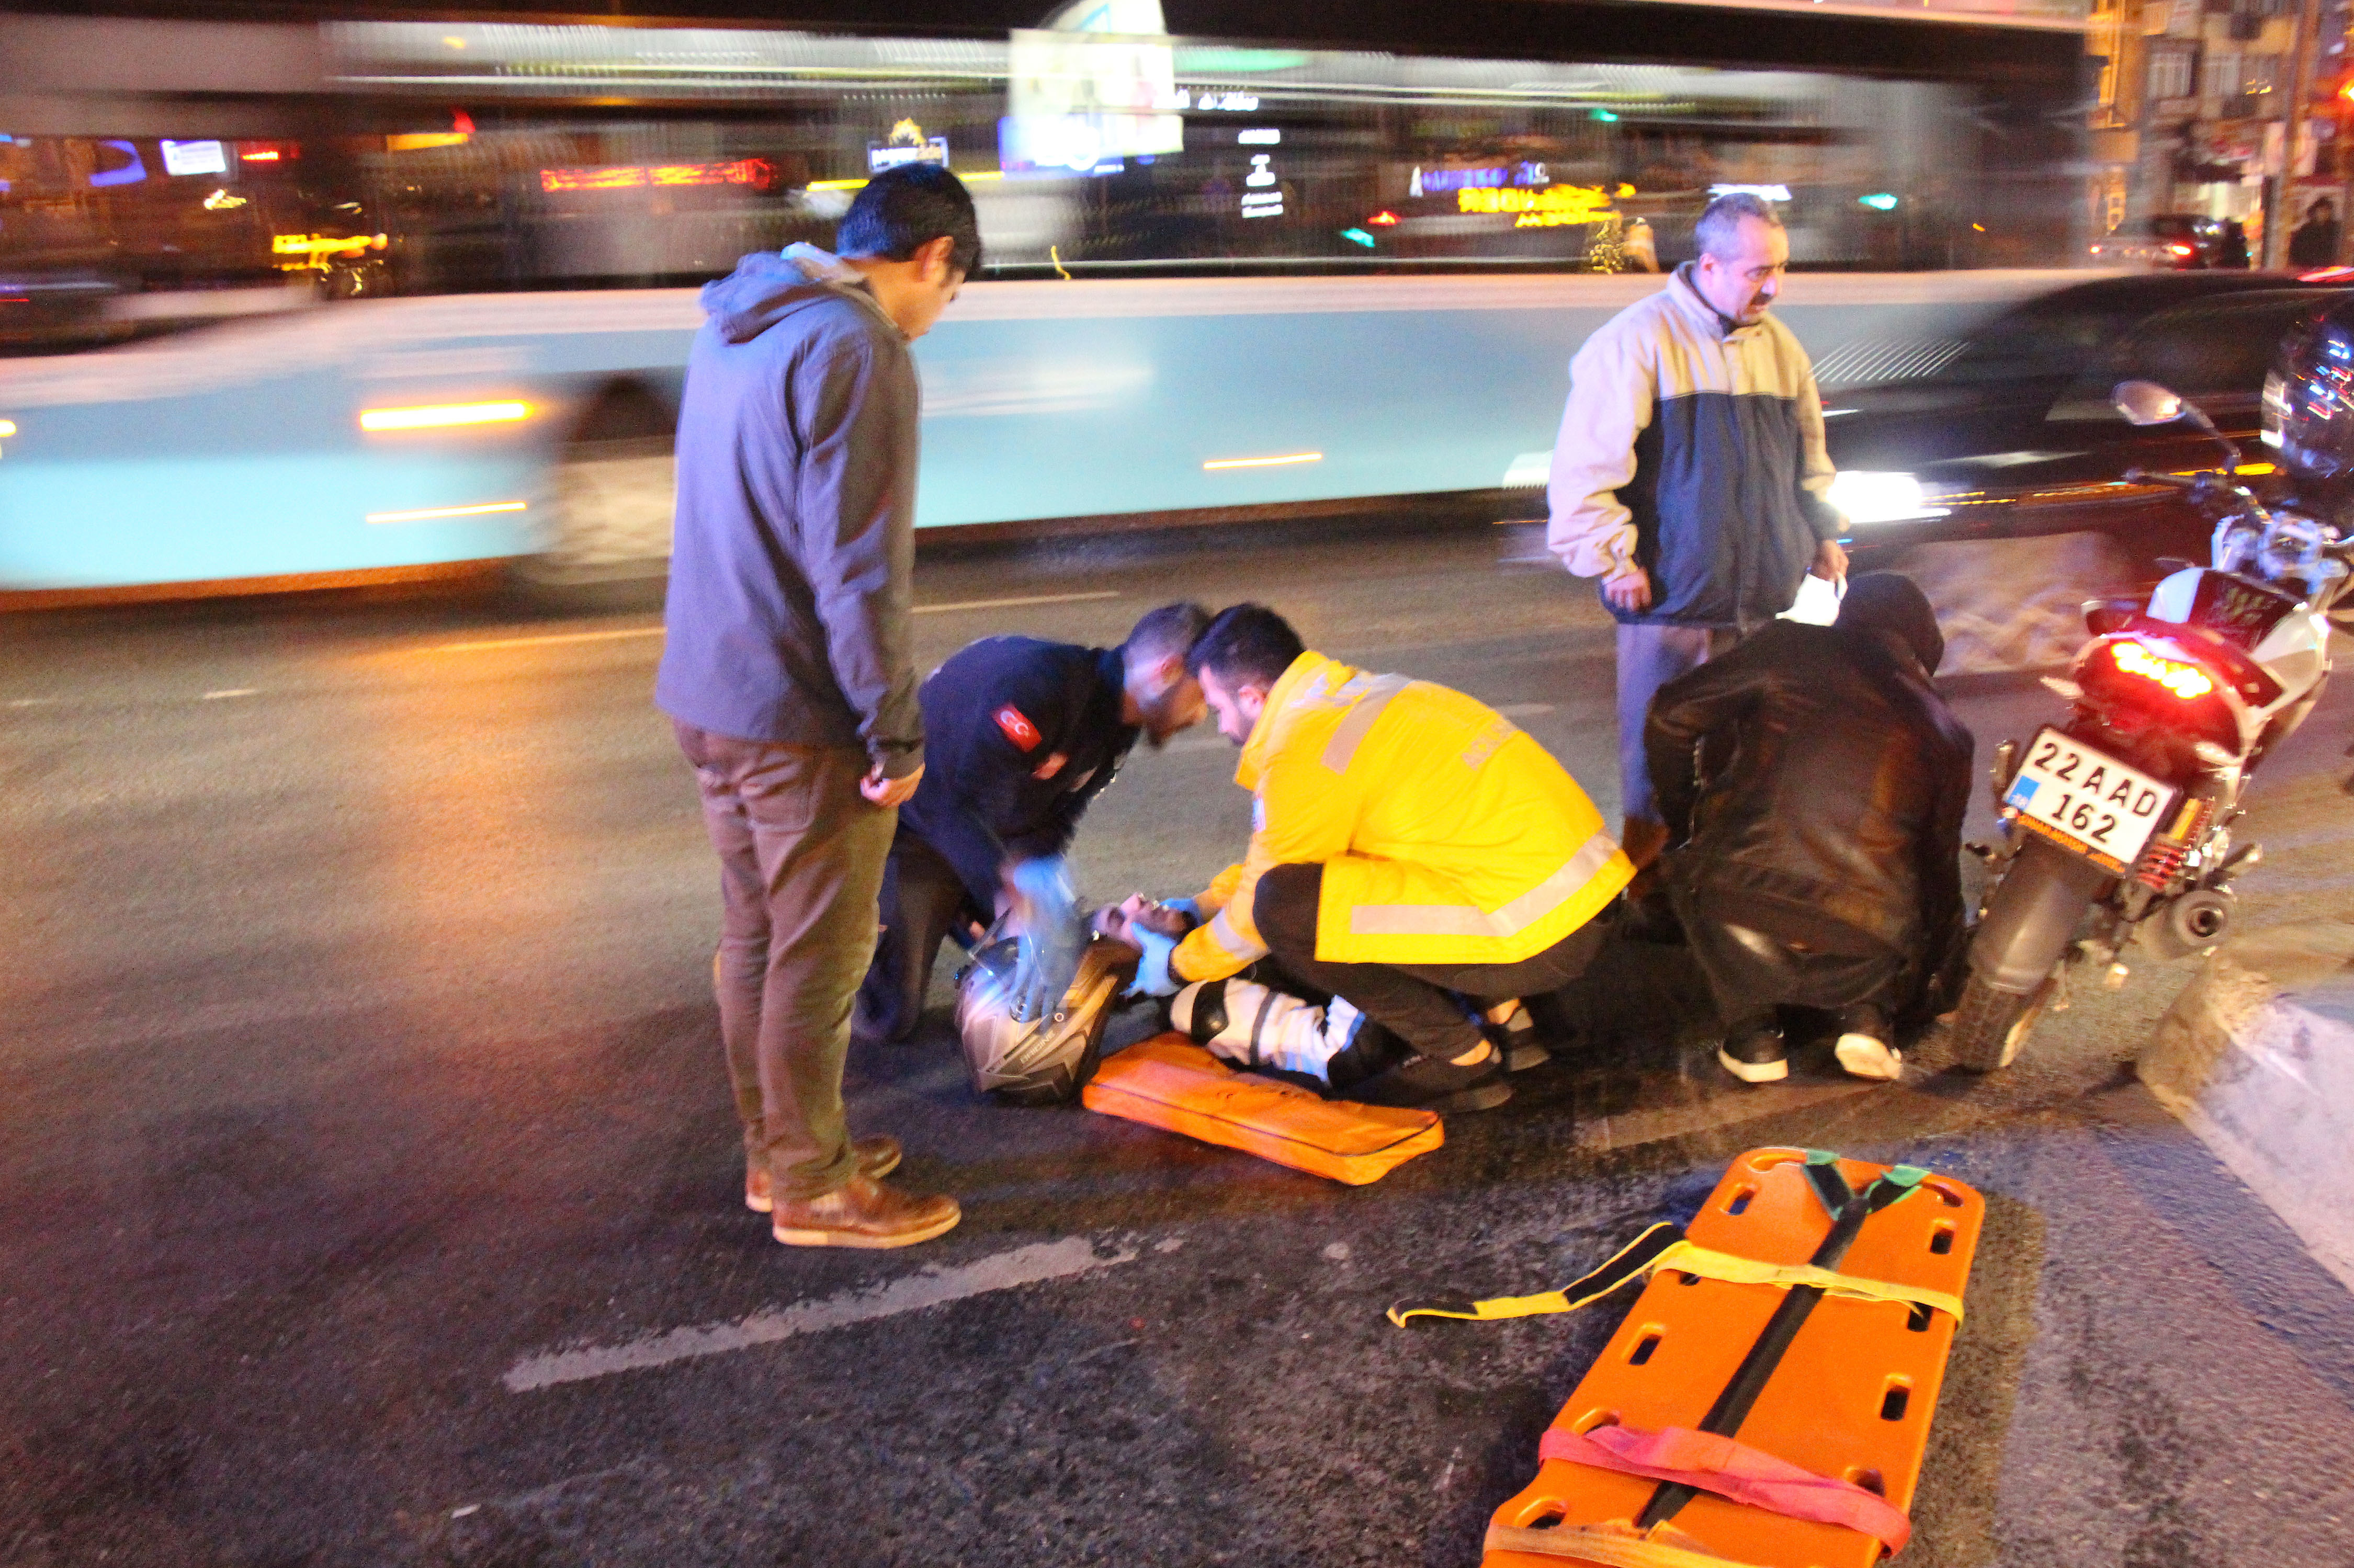 İstanbul Beşiktaş'ta yola dökülen yağ kazaya neden oldu